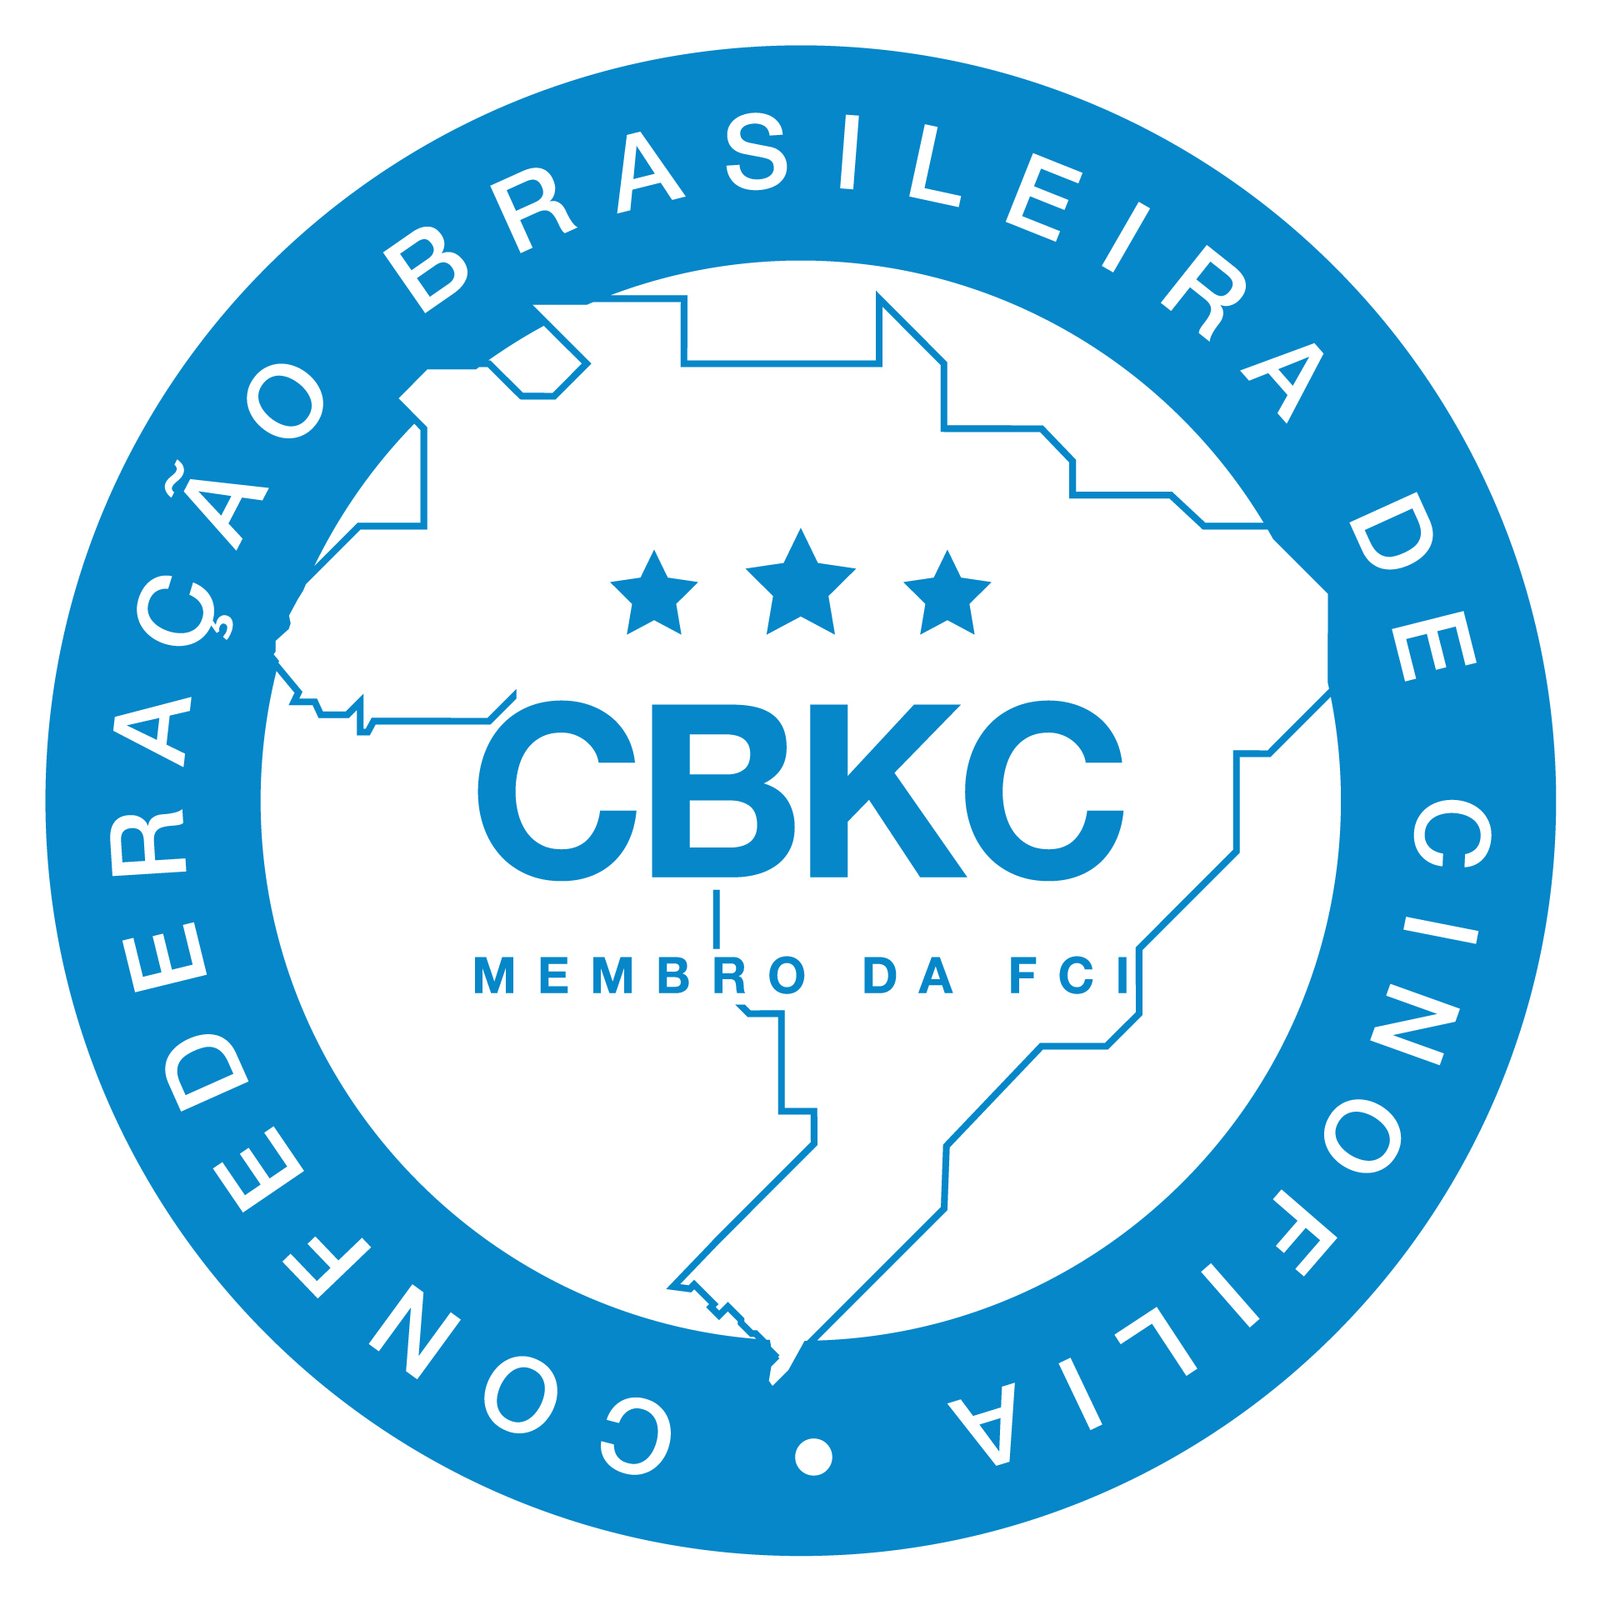 CBKC